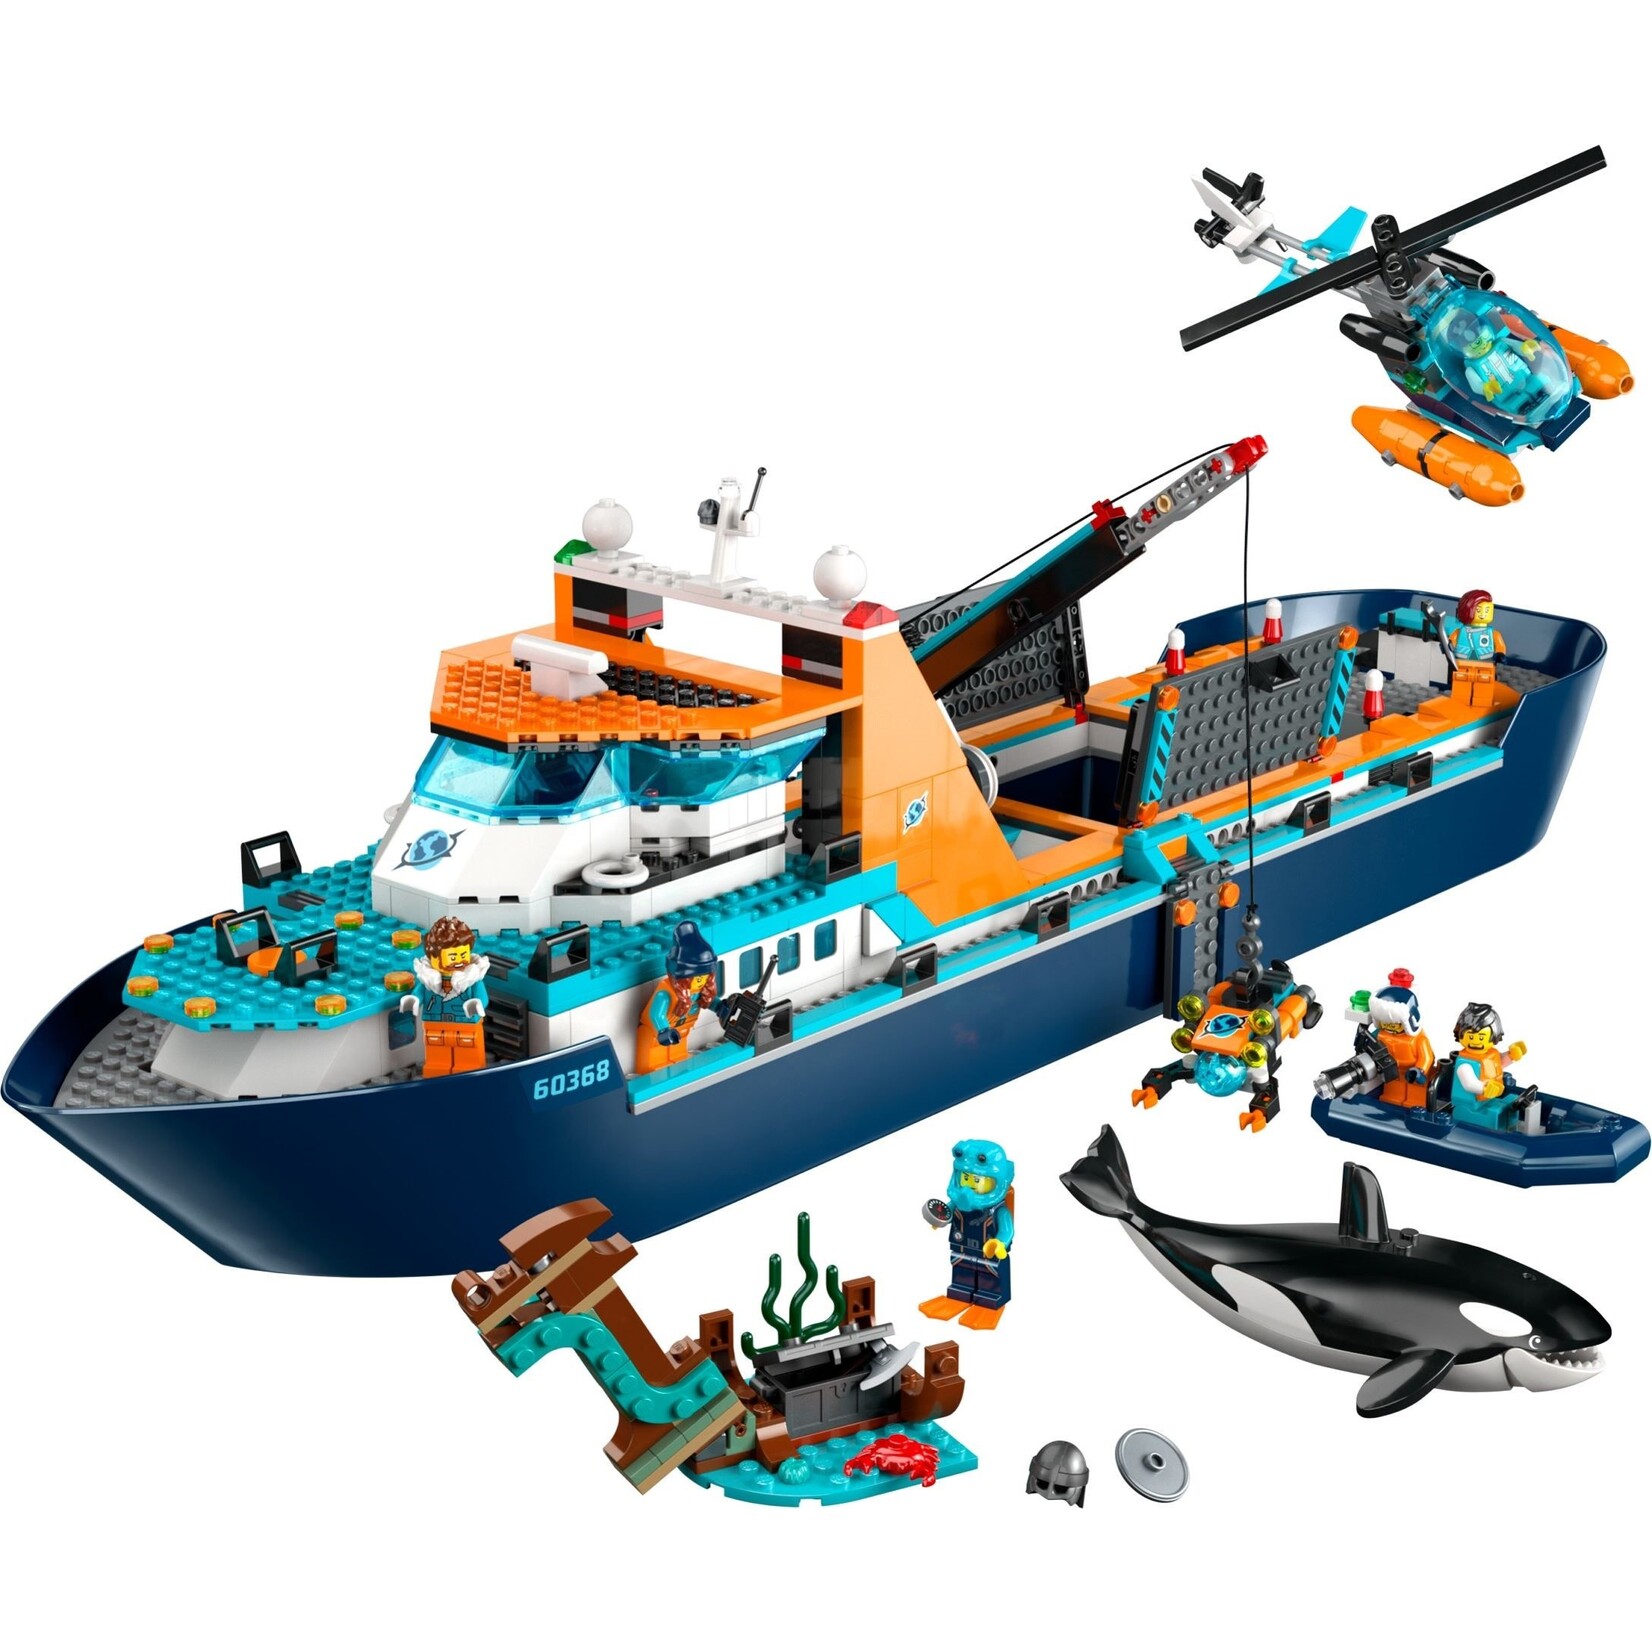 LEGO Poolonderzoeksschip -  60368